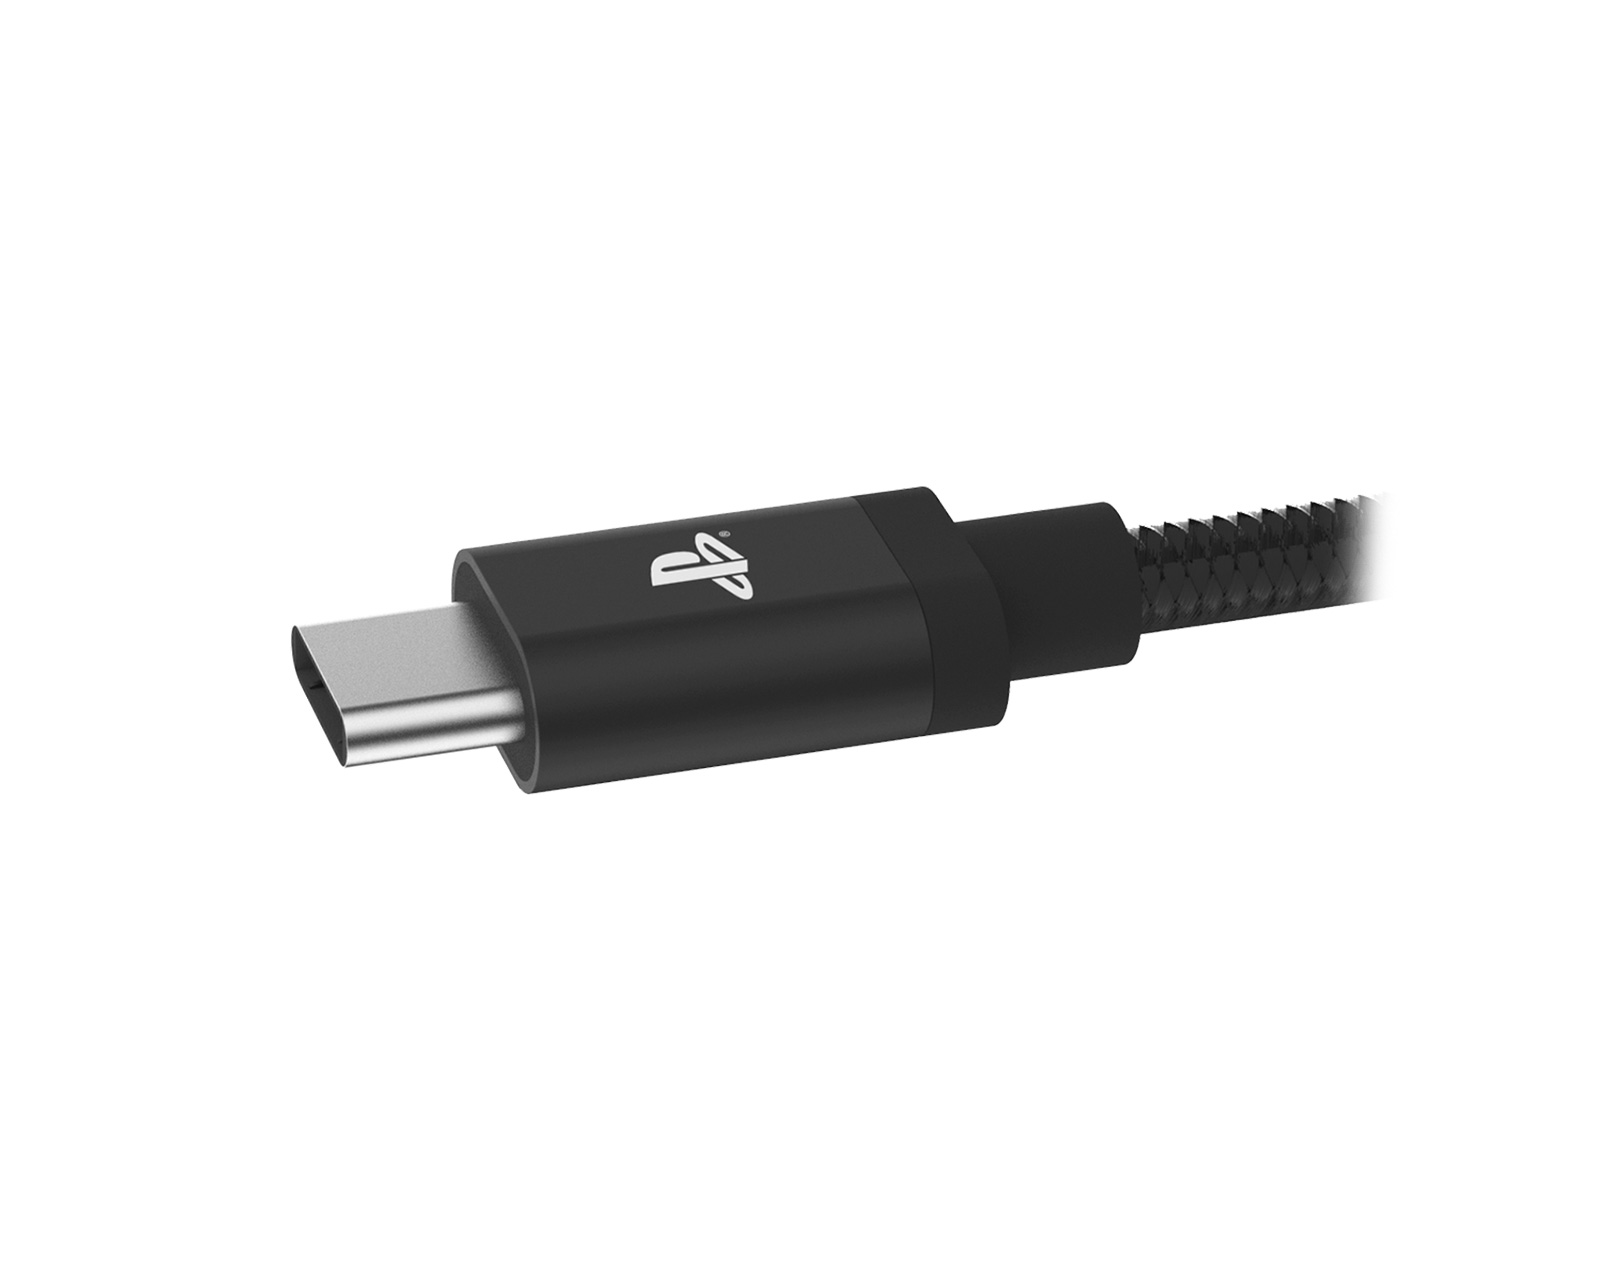 CABLE DE RECHARGE MANETTE DE PS4/XBOXONE/MOBILE (MICRO USB) 3M